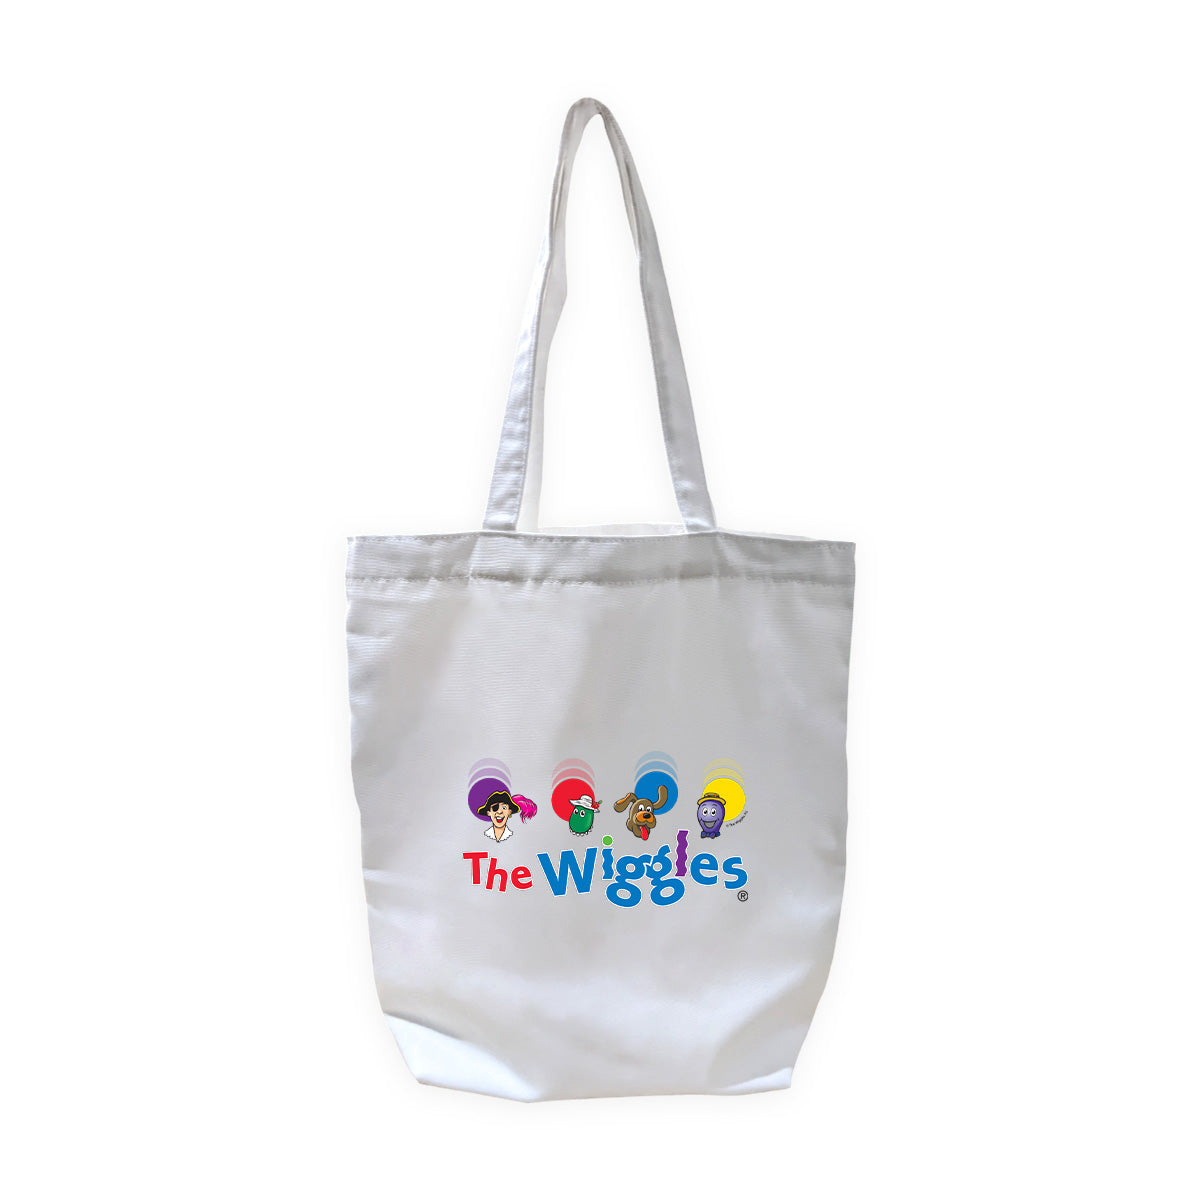 The Wiggles Original Friends Tote Bag